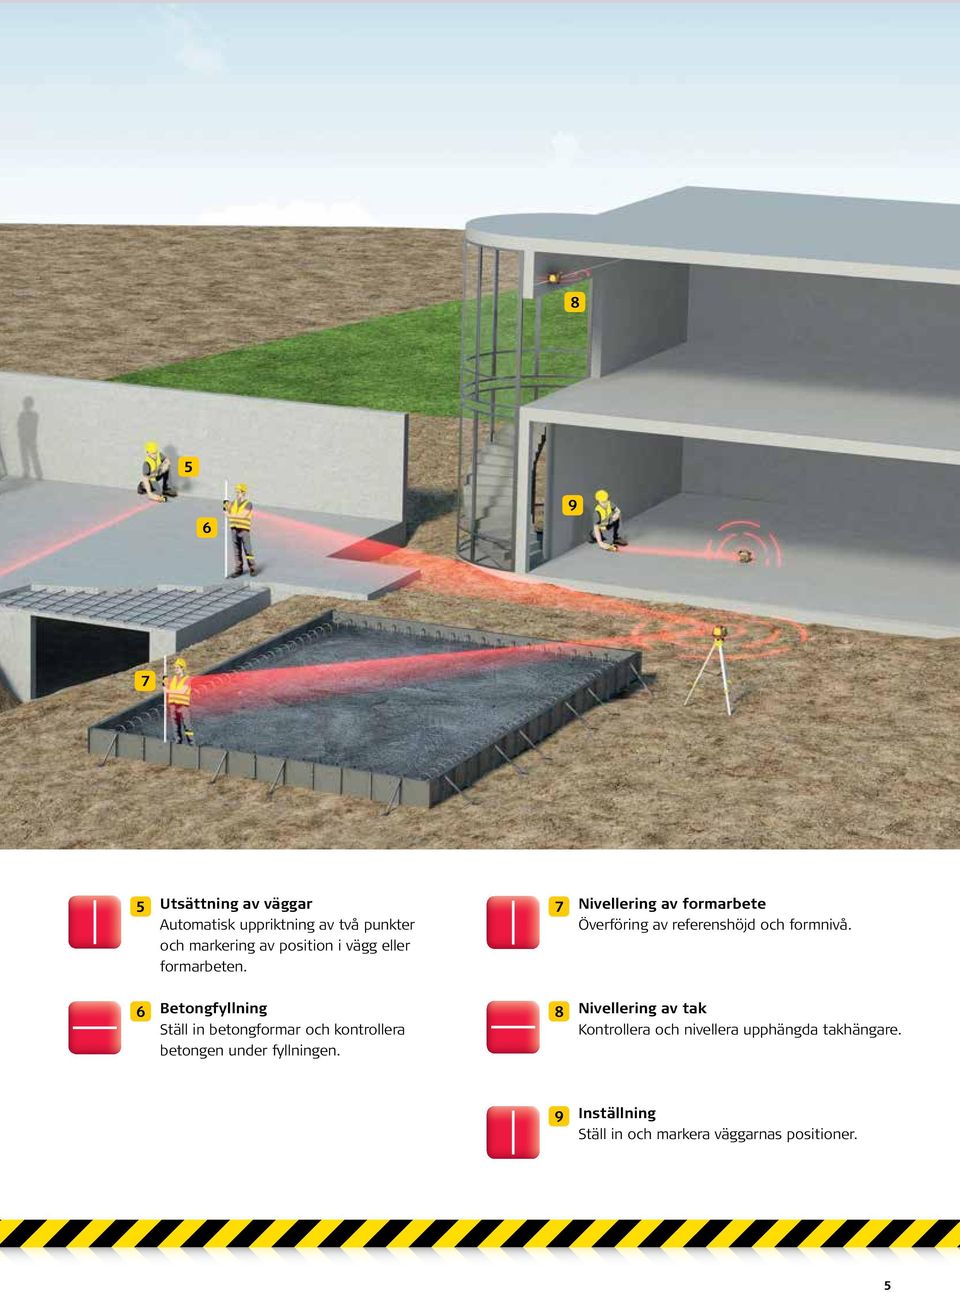 6 Betongfyllning Ställ in betongformar och kontrollera betongen under fyllningen.